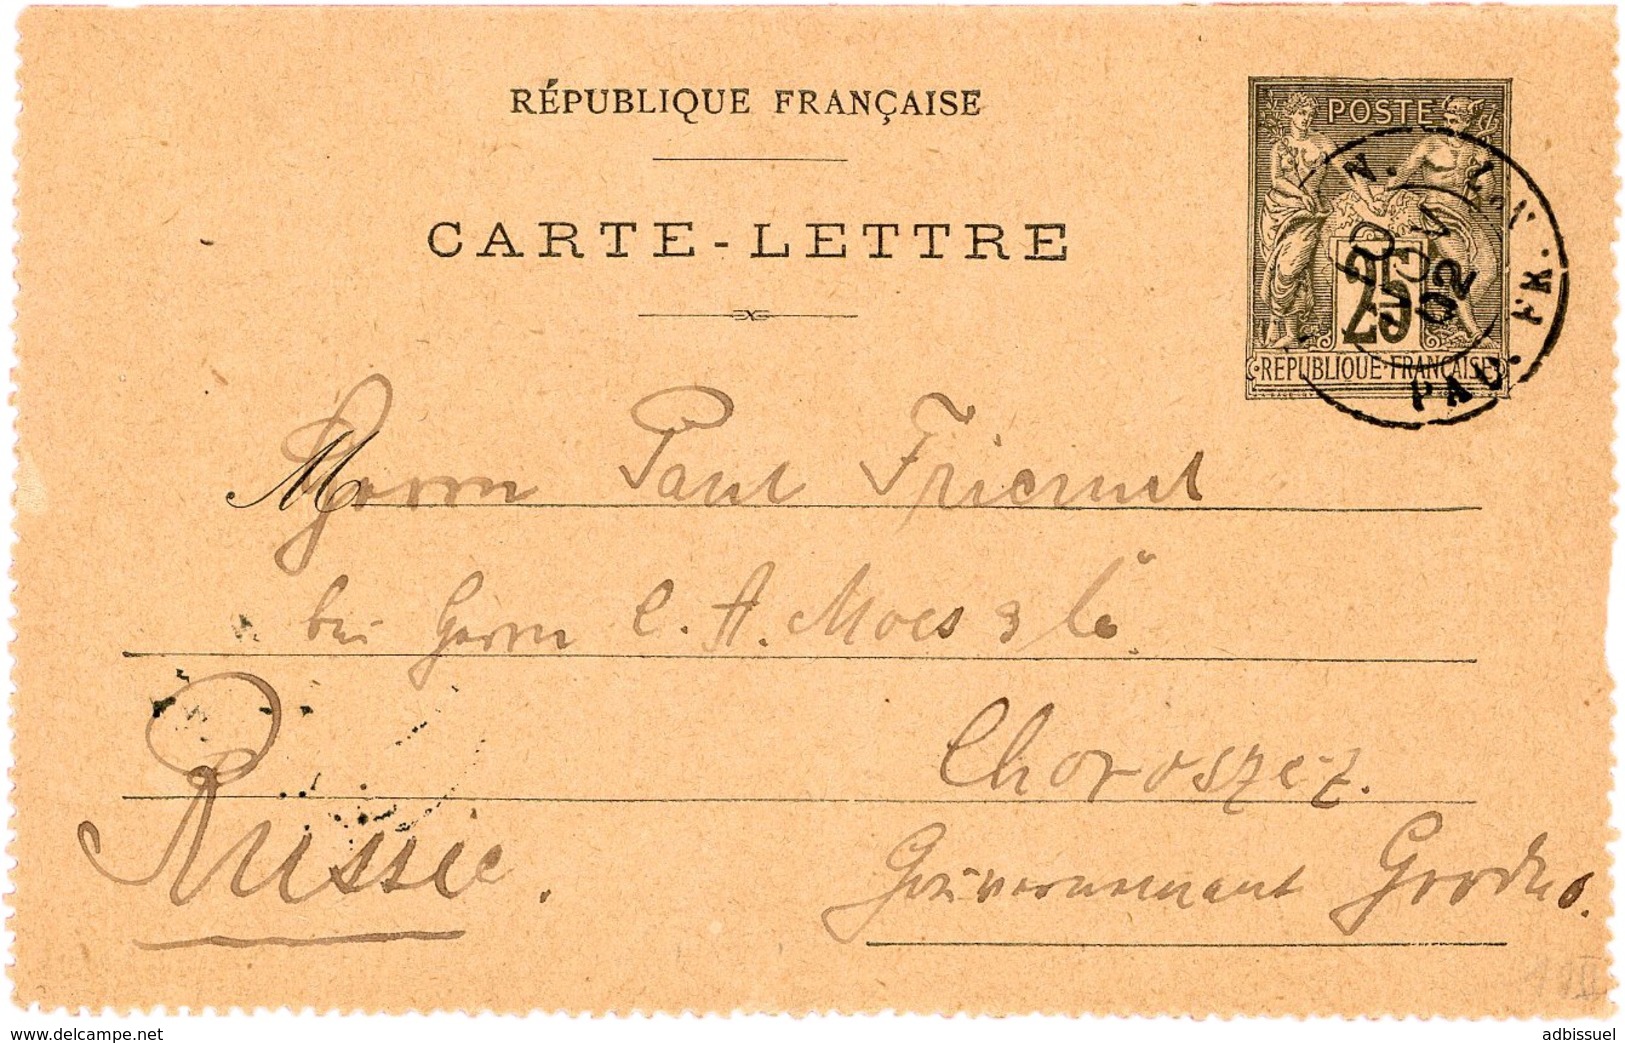 1902 Carte Lettre 25ct Adressée En RUSSIE Obl. C.à.d "LIGNE N. PAQ. FR. N°7 10/11/02" (Escale De Shanghai, Indice 13) - Kartenbriefe